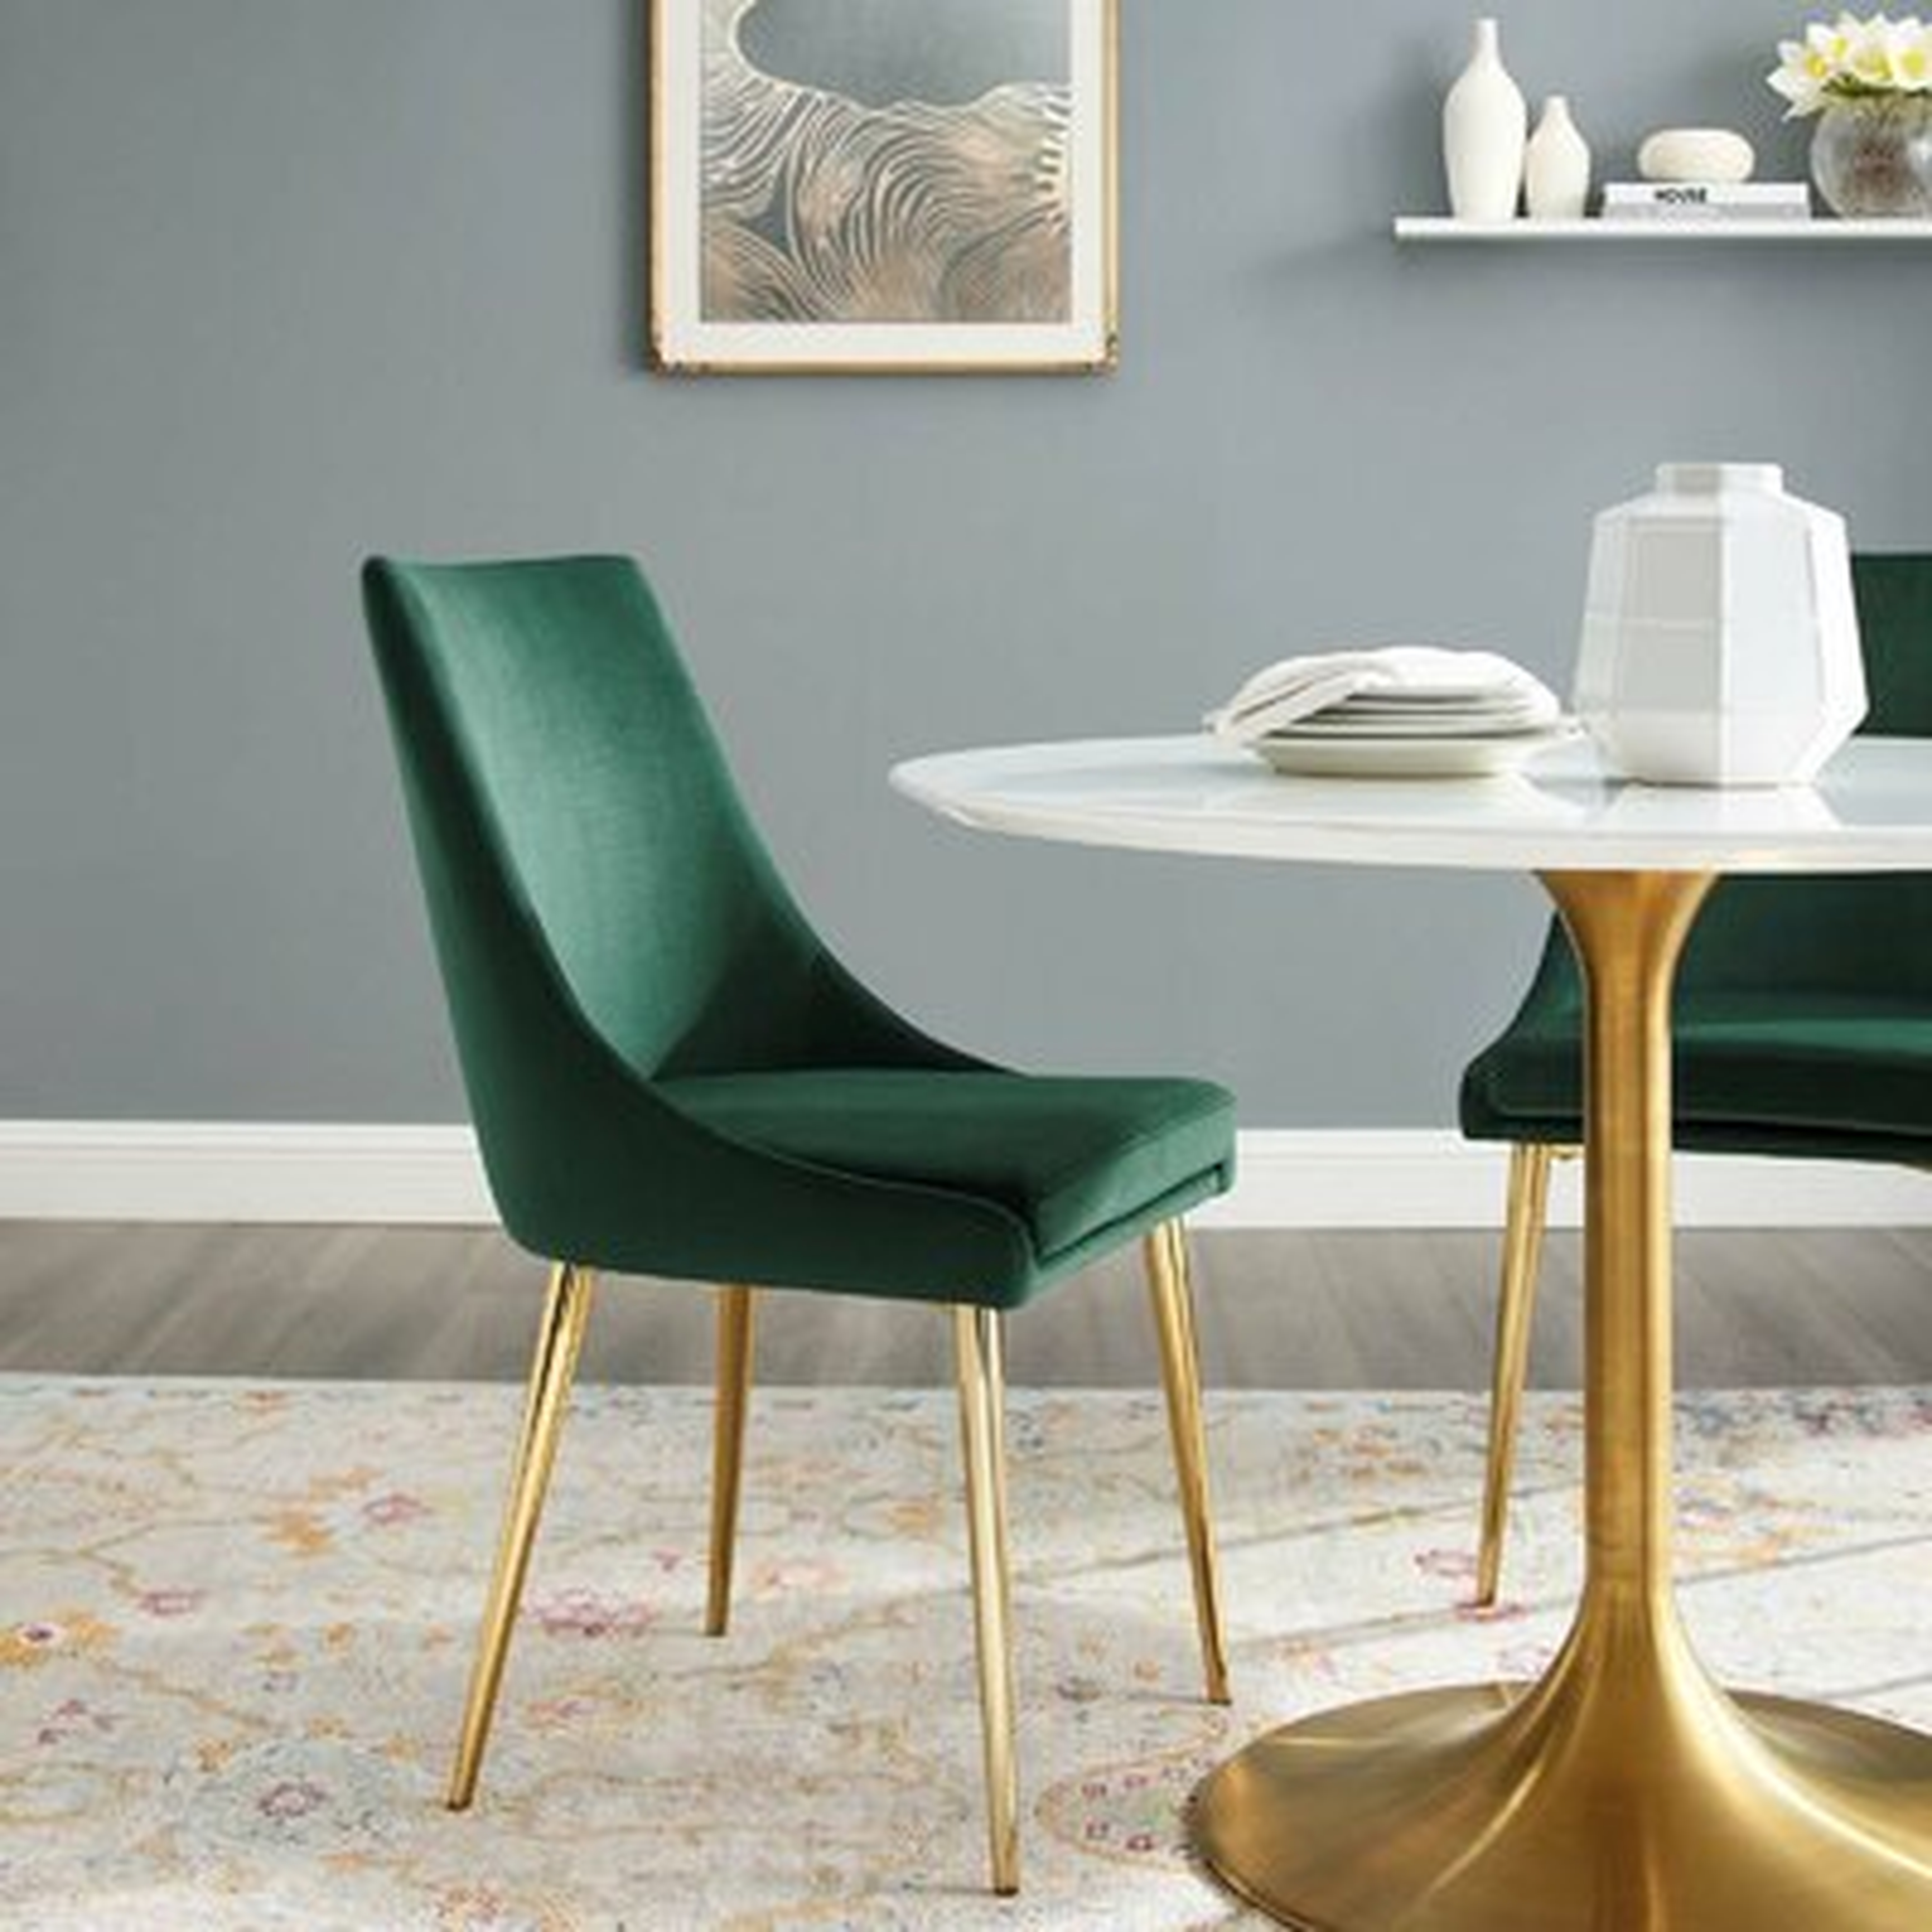 Jauregui Performance Upholstered Dining Chair - Wayfair